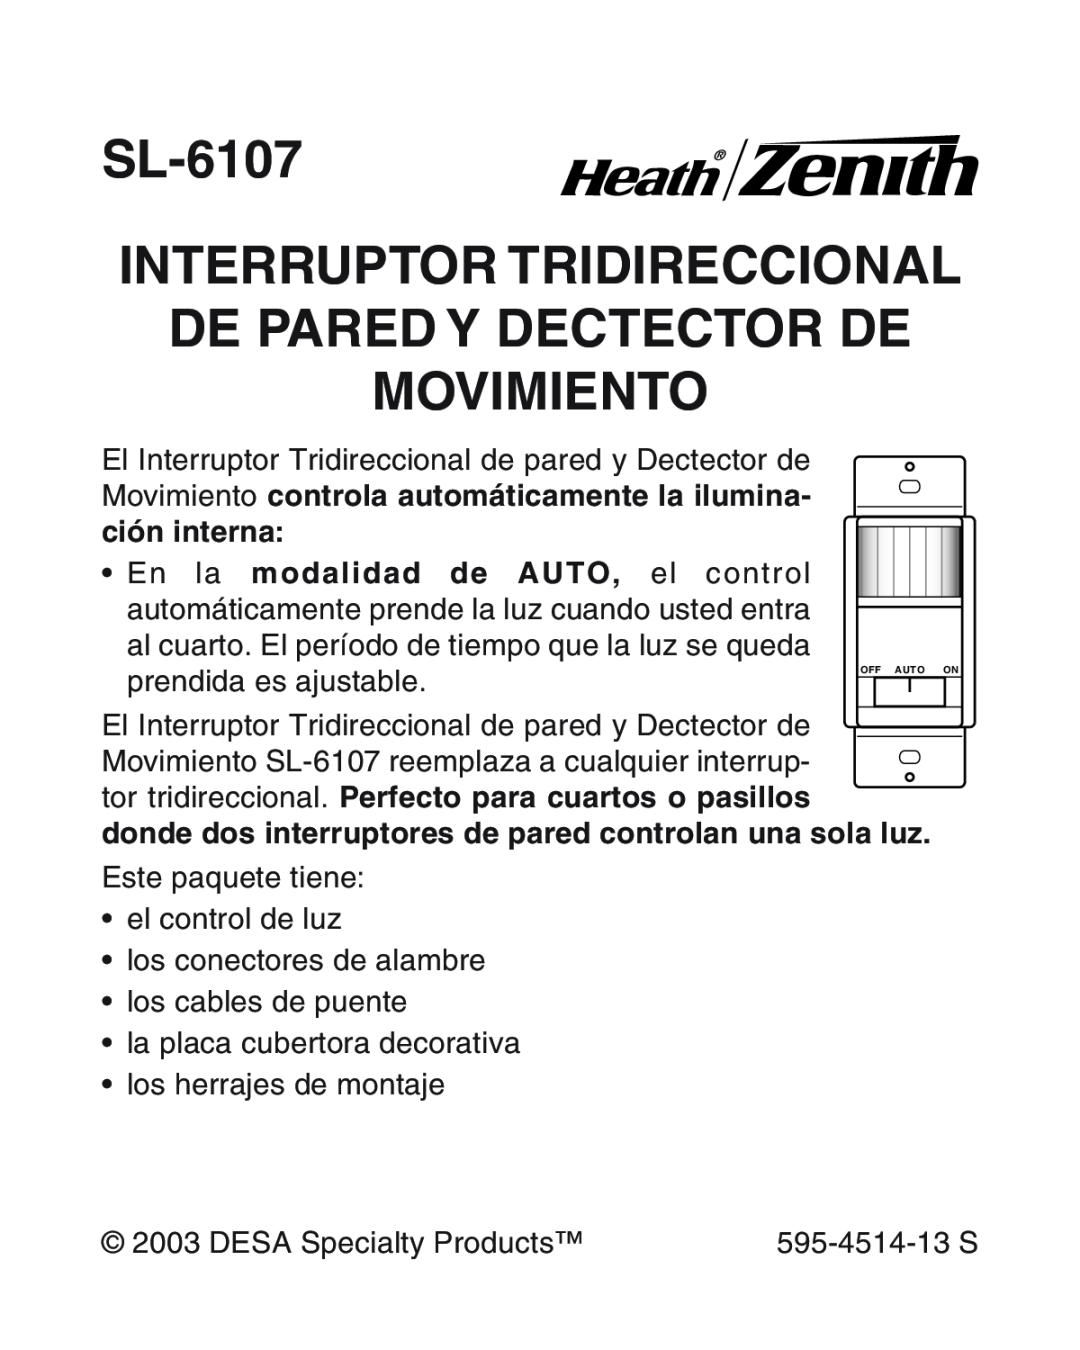 Heath Zenith manual SL-6107 INTERRUPTOR TRIDIRECCIONAL, De Pared Y Dectector De Movimiento 